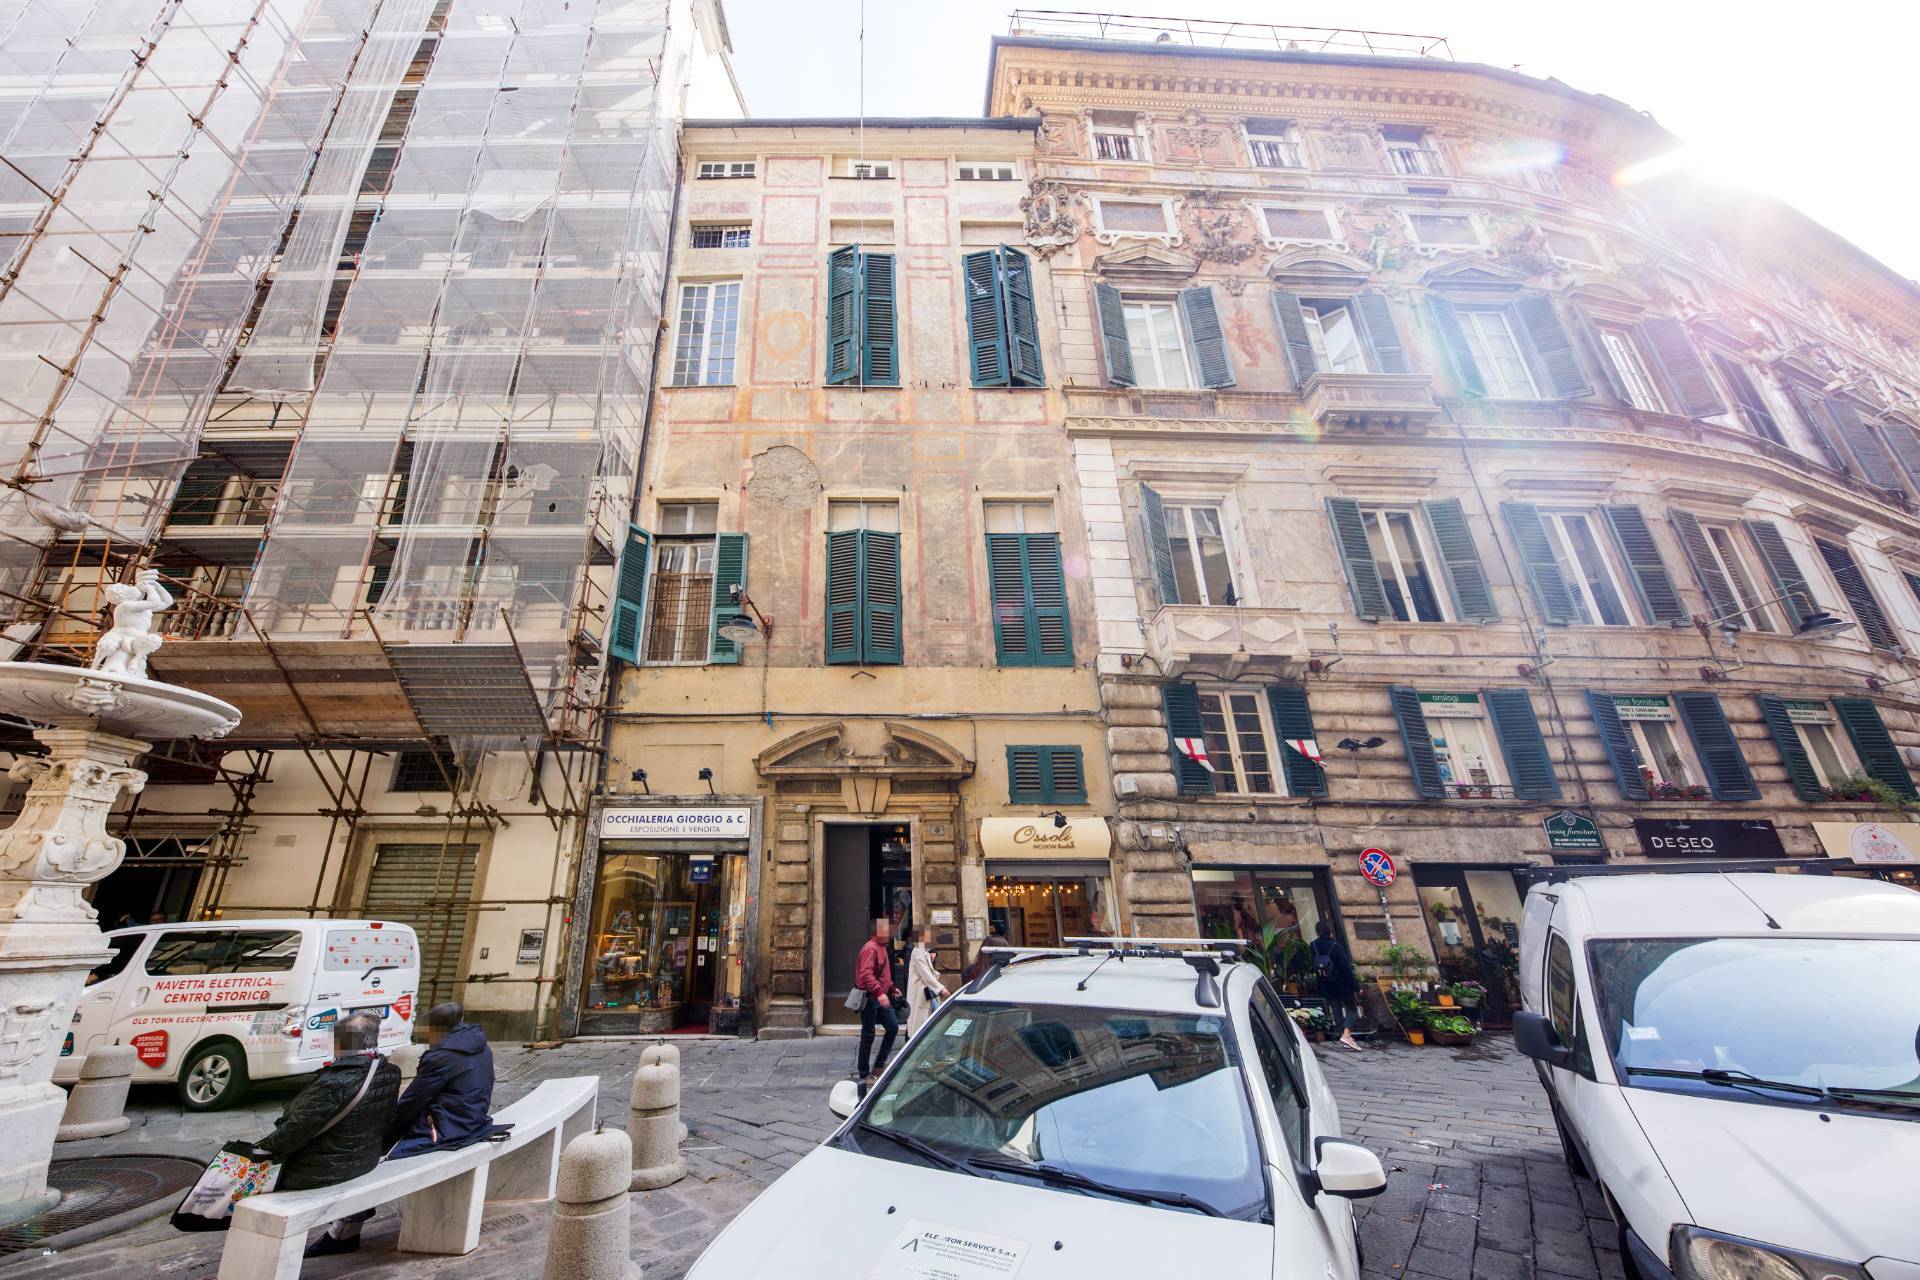 Appartamento da ristrutturare, Genova centro storico